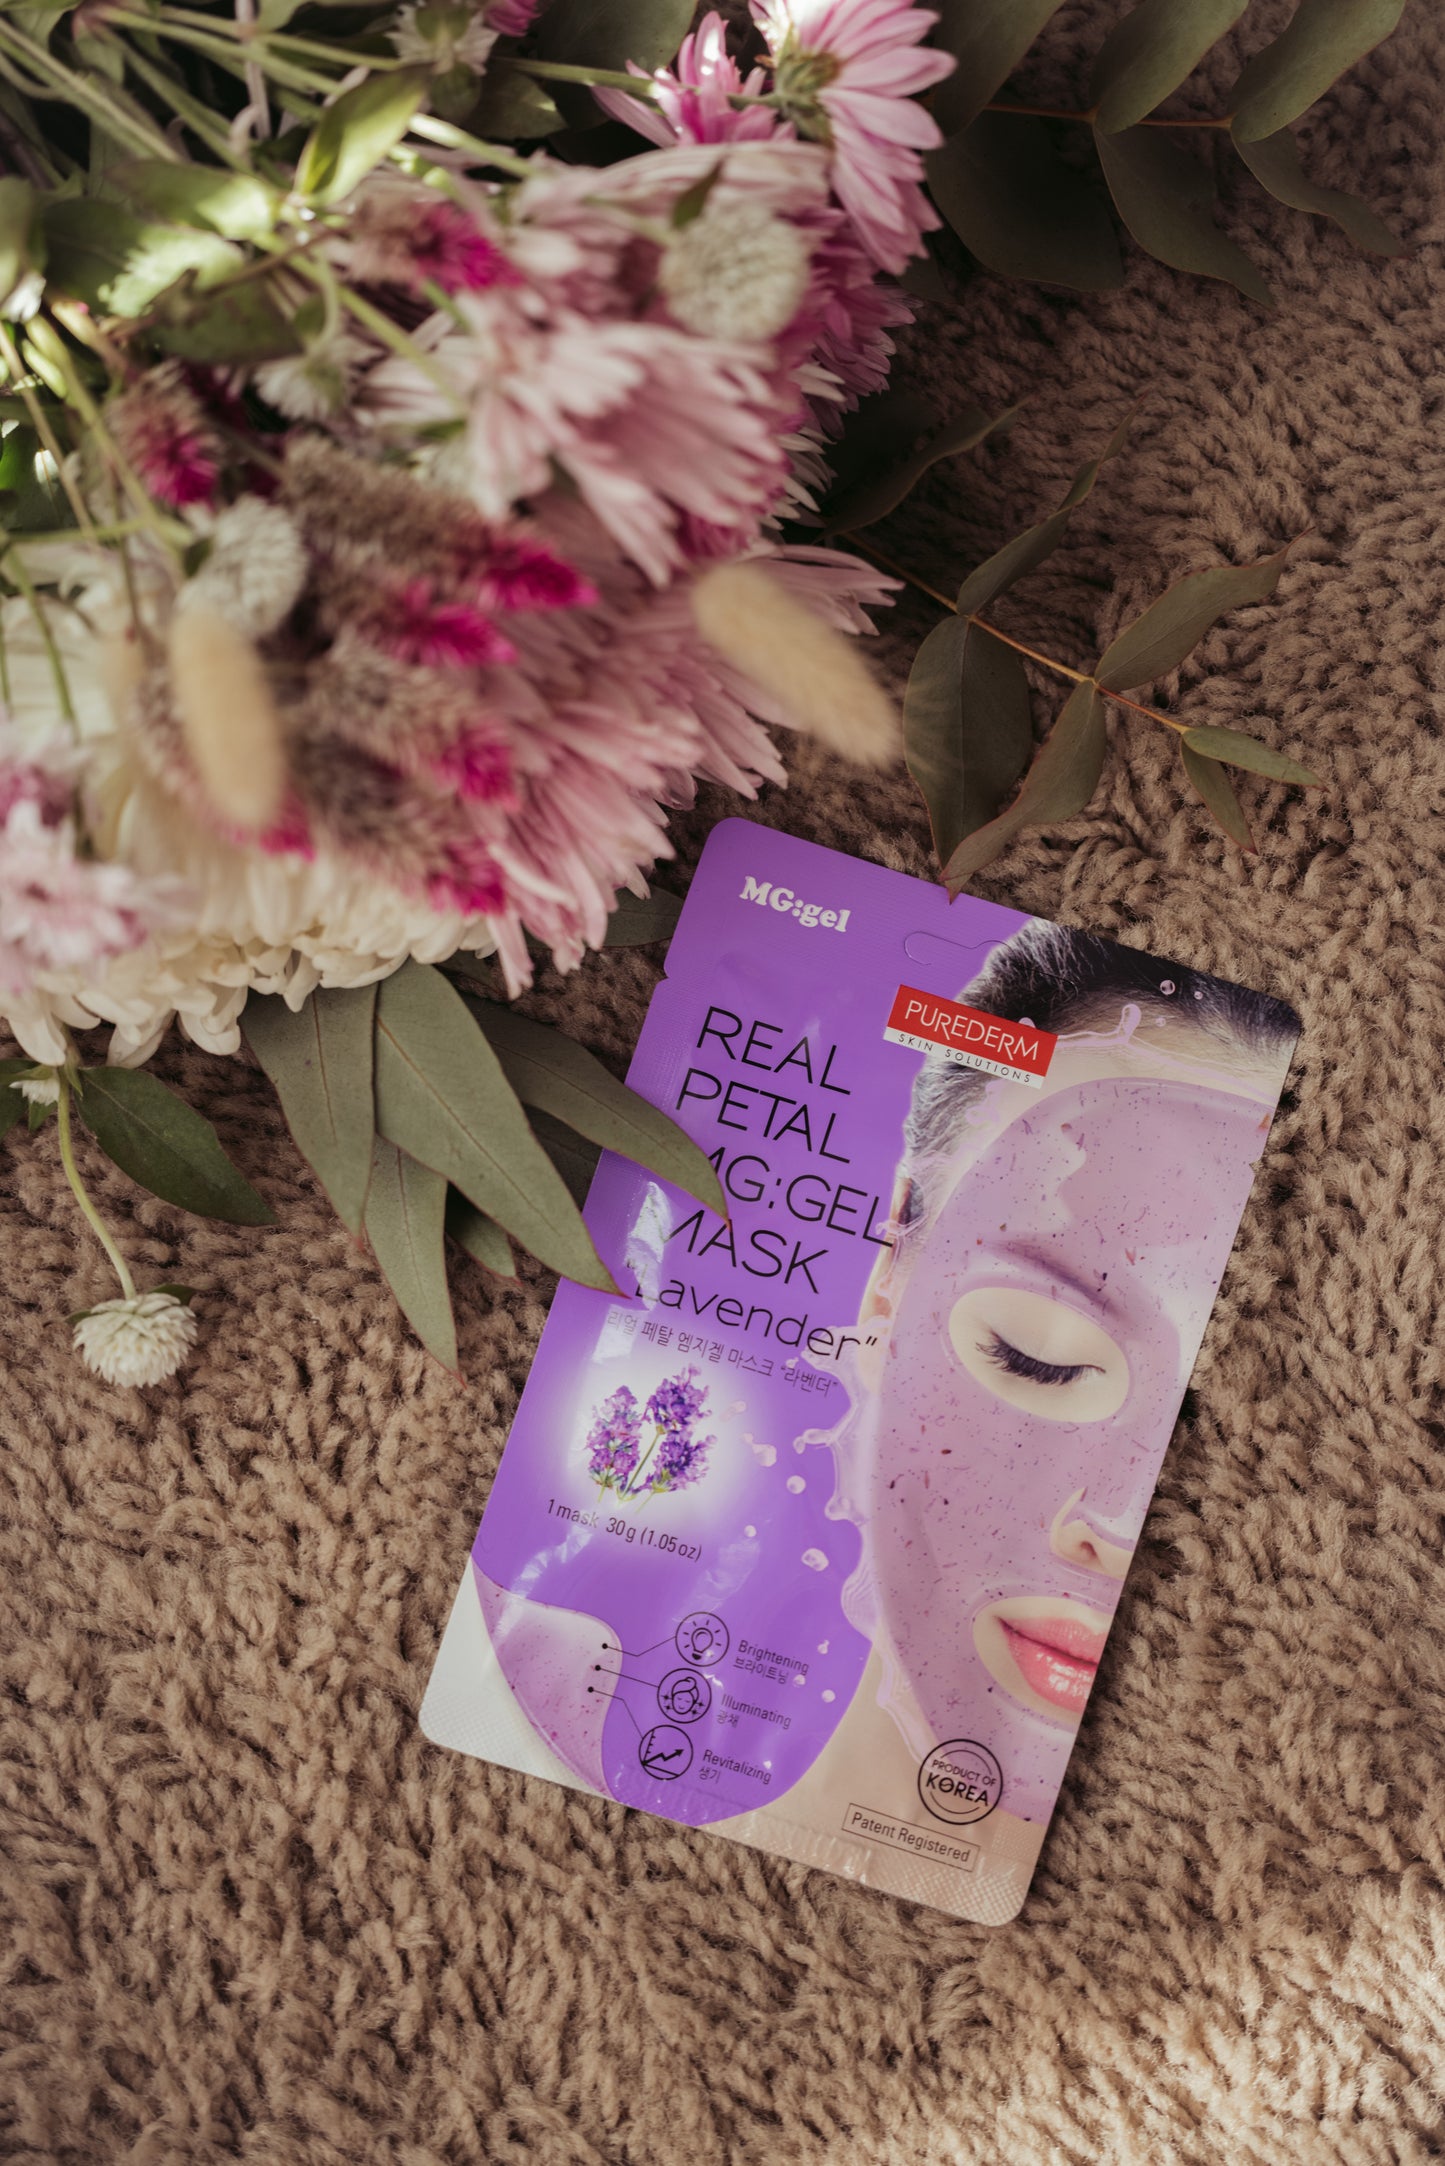 Real Petal MG:gel Mask “Lavender” – Máscara de GEL con pétalos reales de lavanda